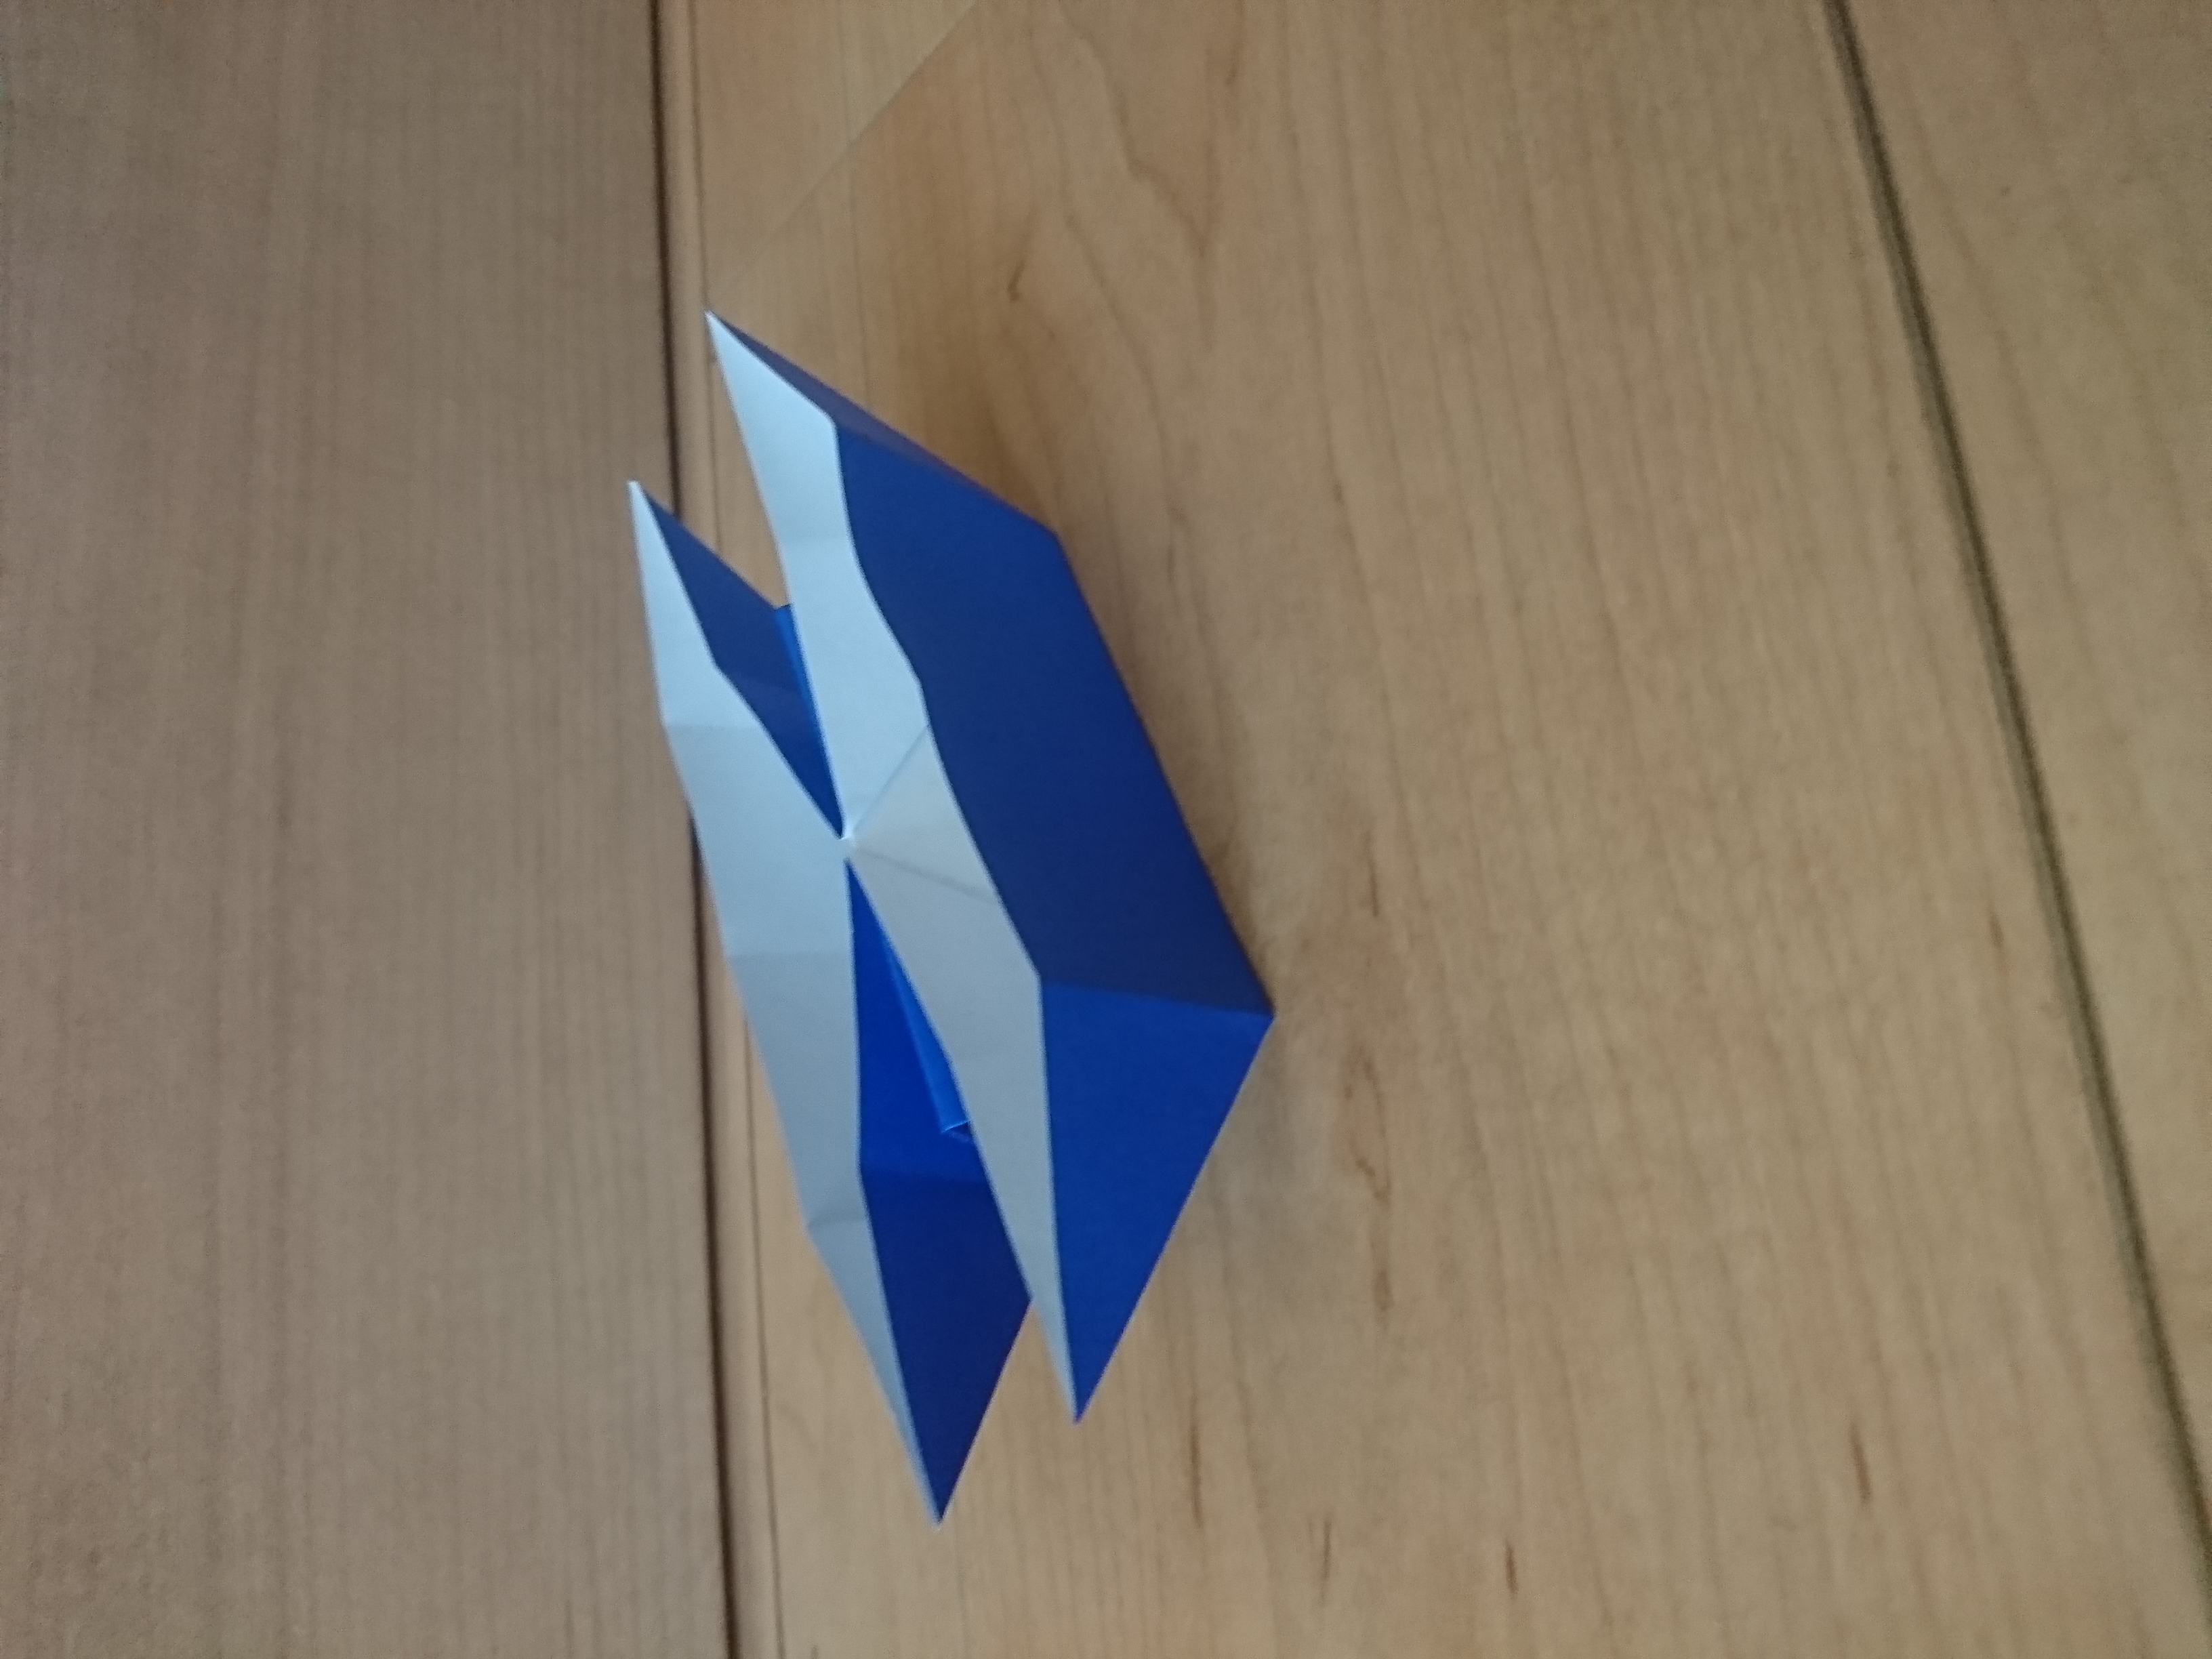 折り紙で作る 船 の折り方 簡単なものや少し難しい立体の作り方まで解説 Kurashi No